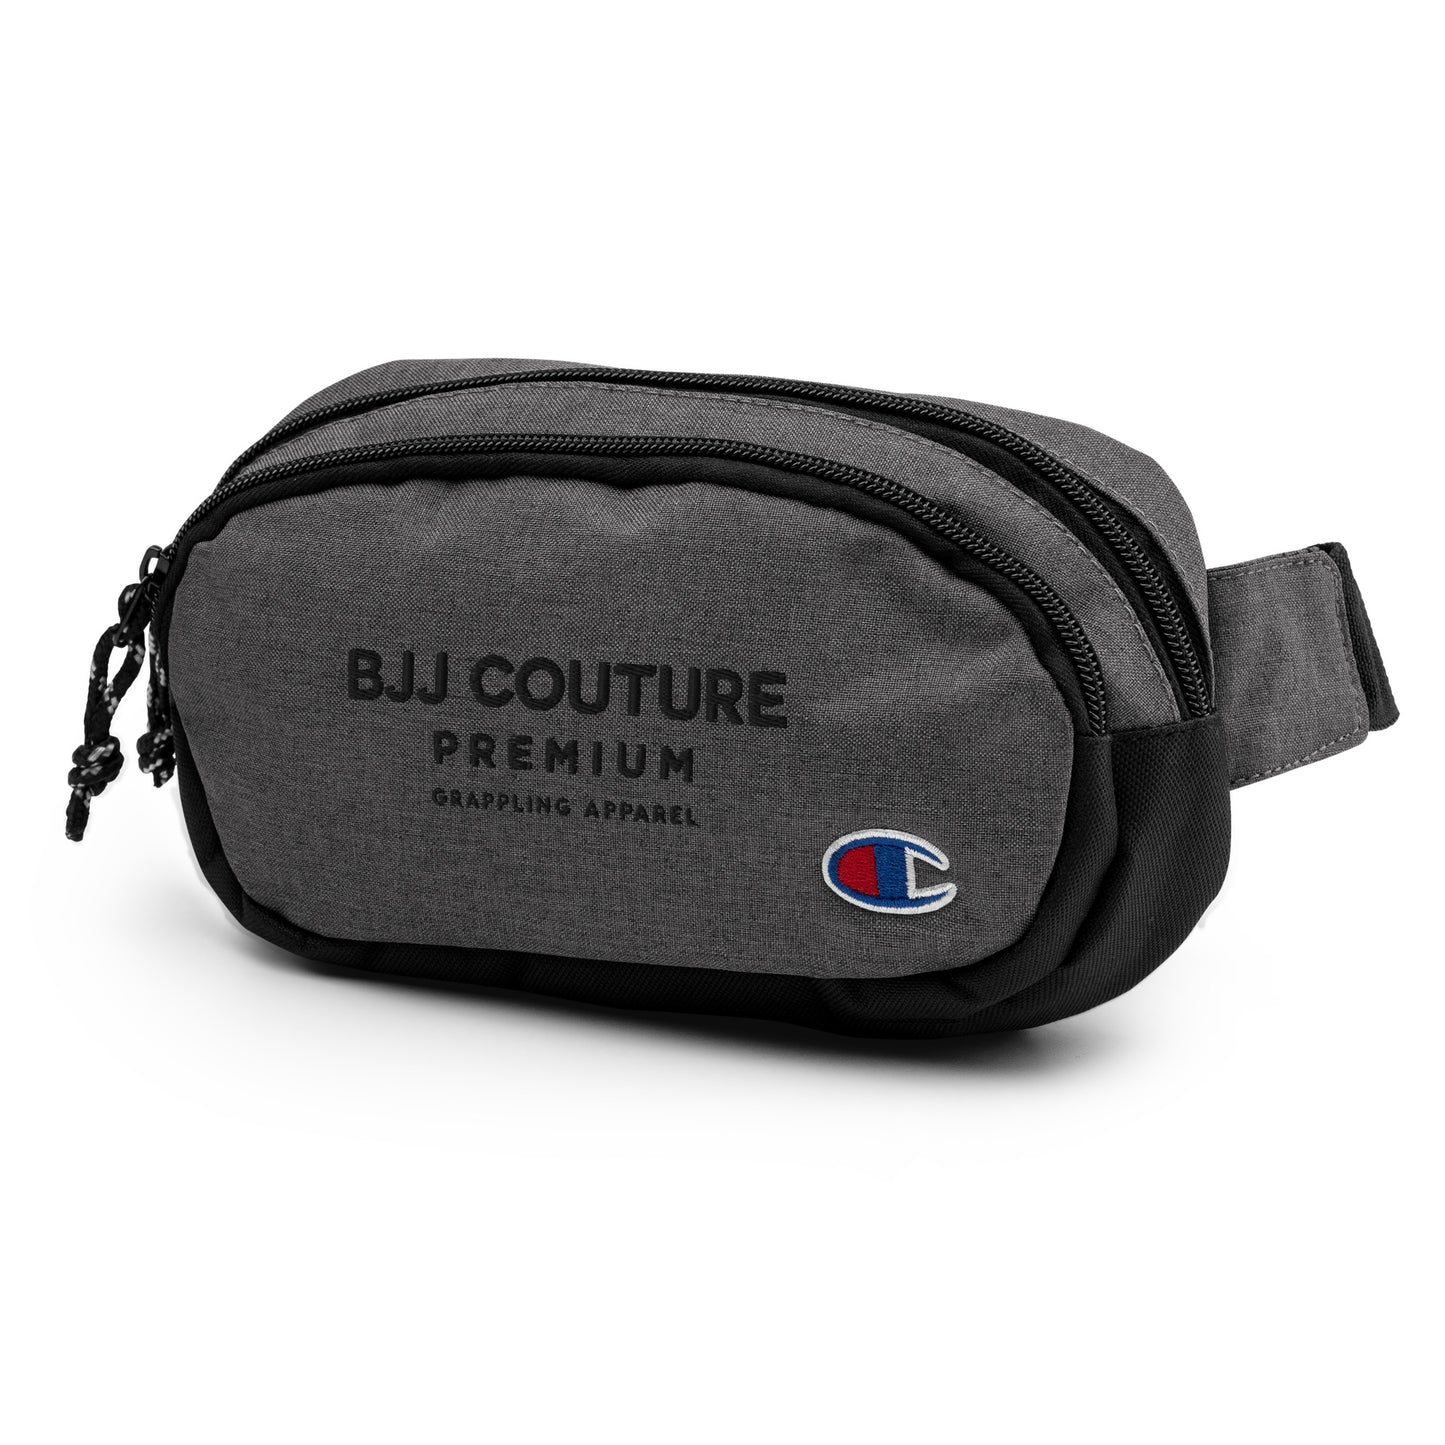 BJJ Couture Premium Champion fanny pack - Black text